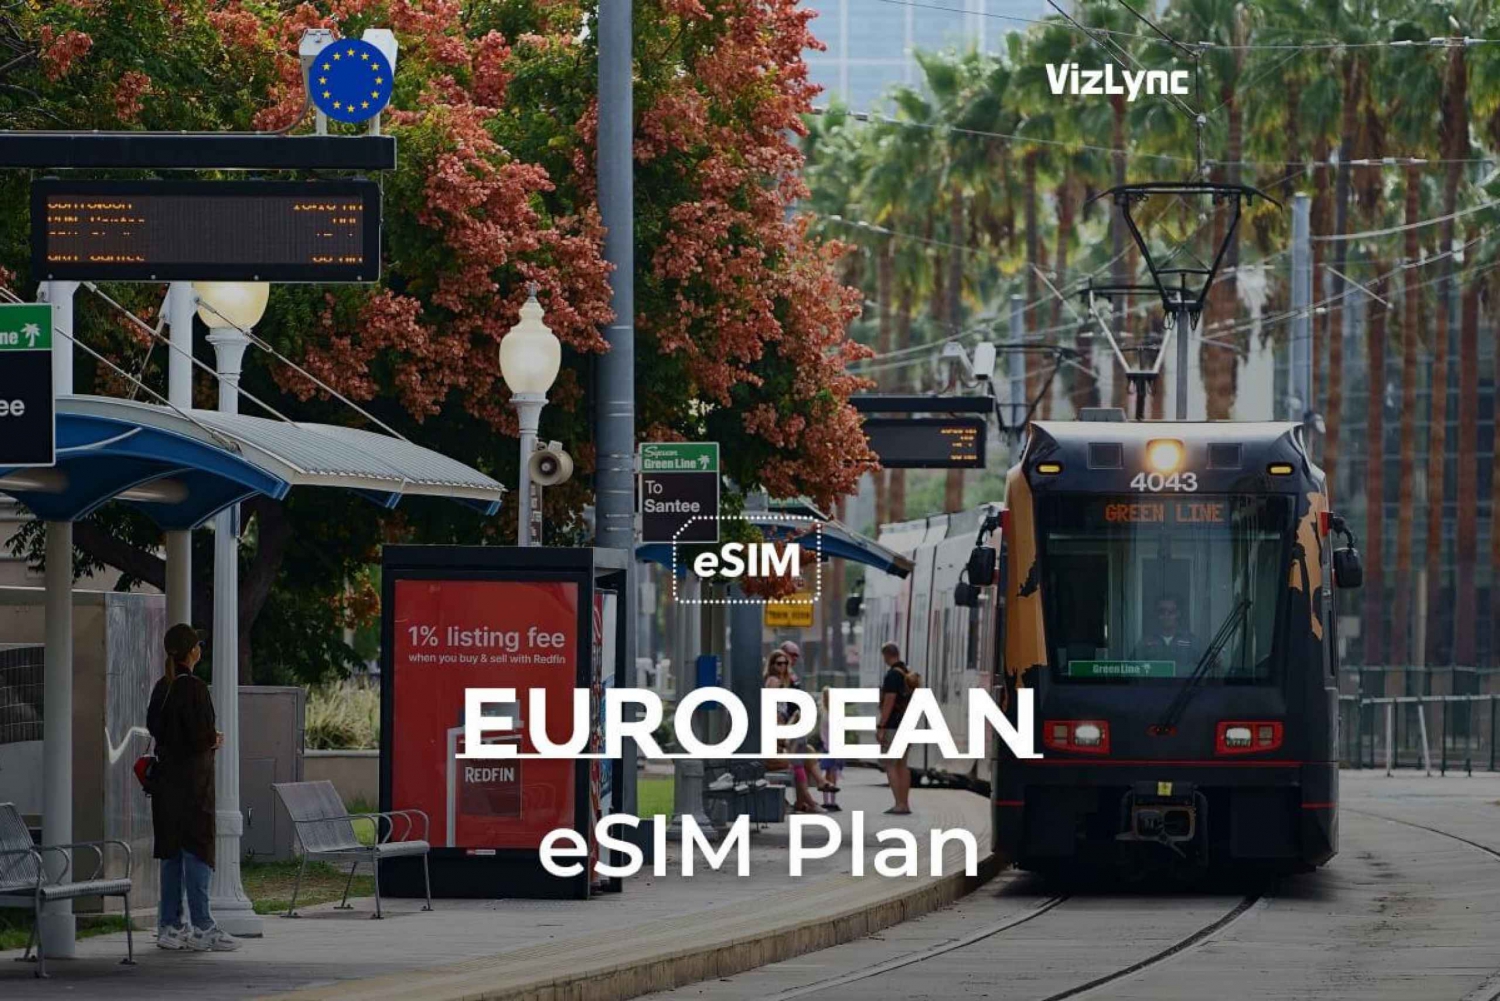 ヨーロッパ旅行 eSIM: 30GB データ + 2時間通話 (14日間)